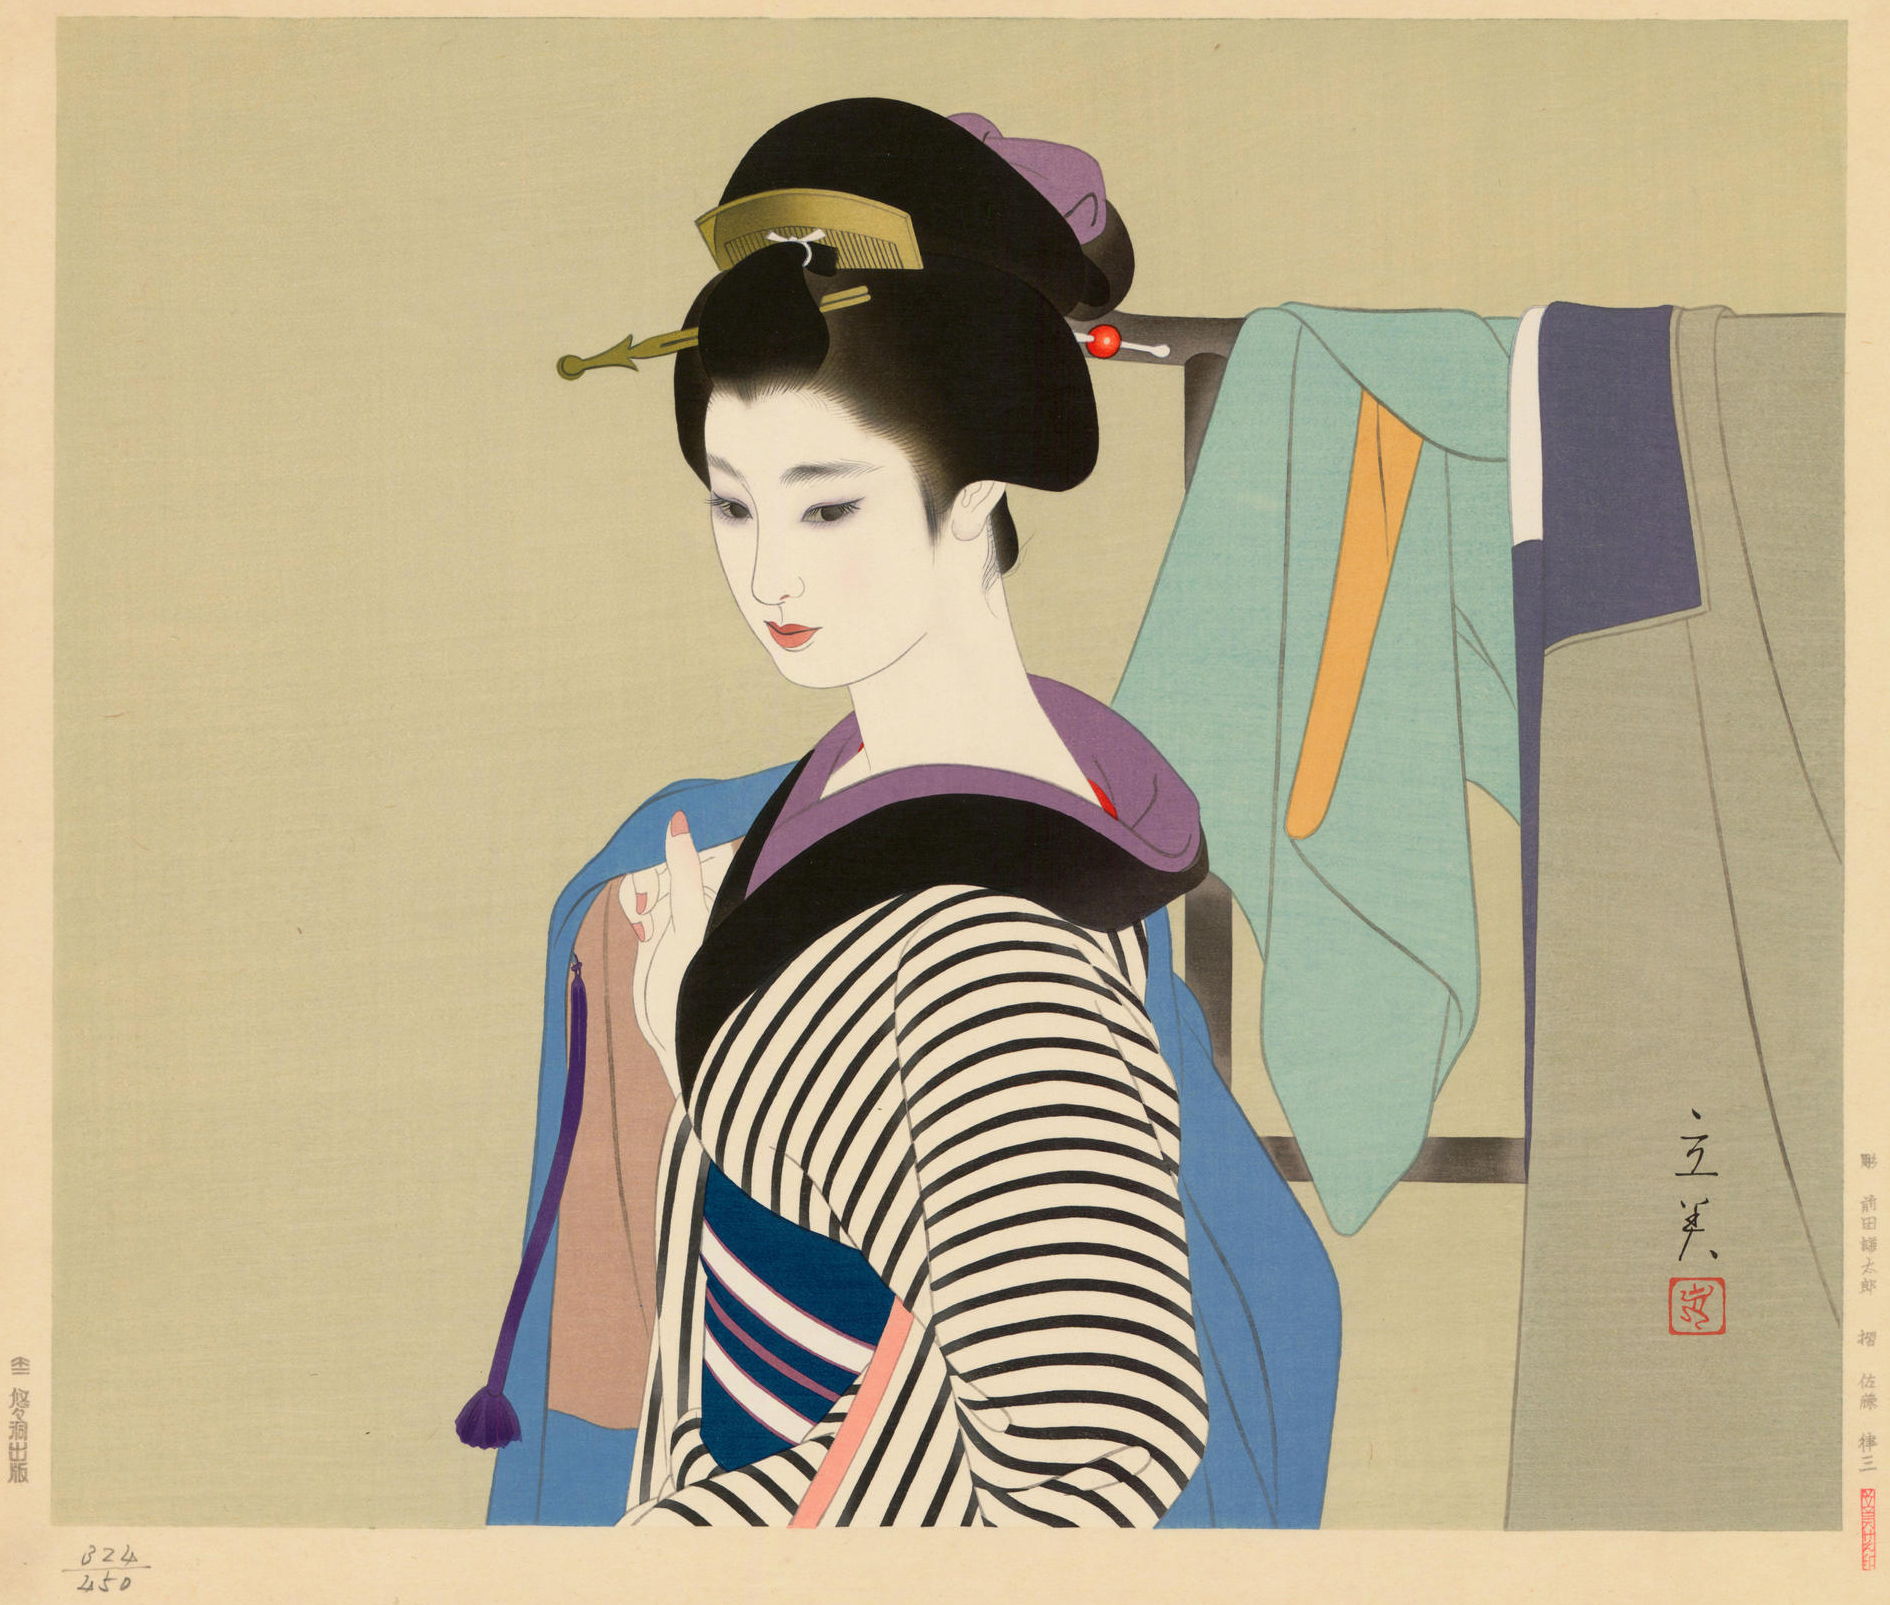 Shimura Tatsumi “Haori (Japanese Jacket)” 1976 woodblock print